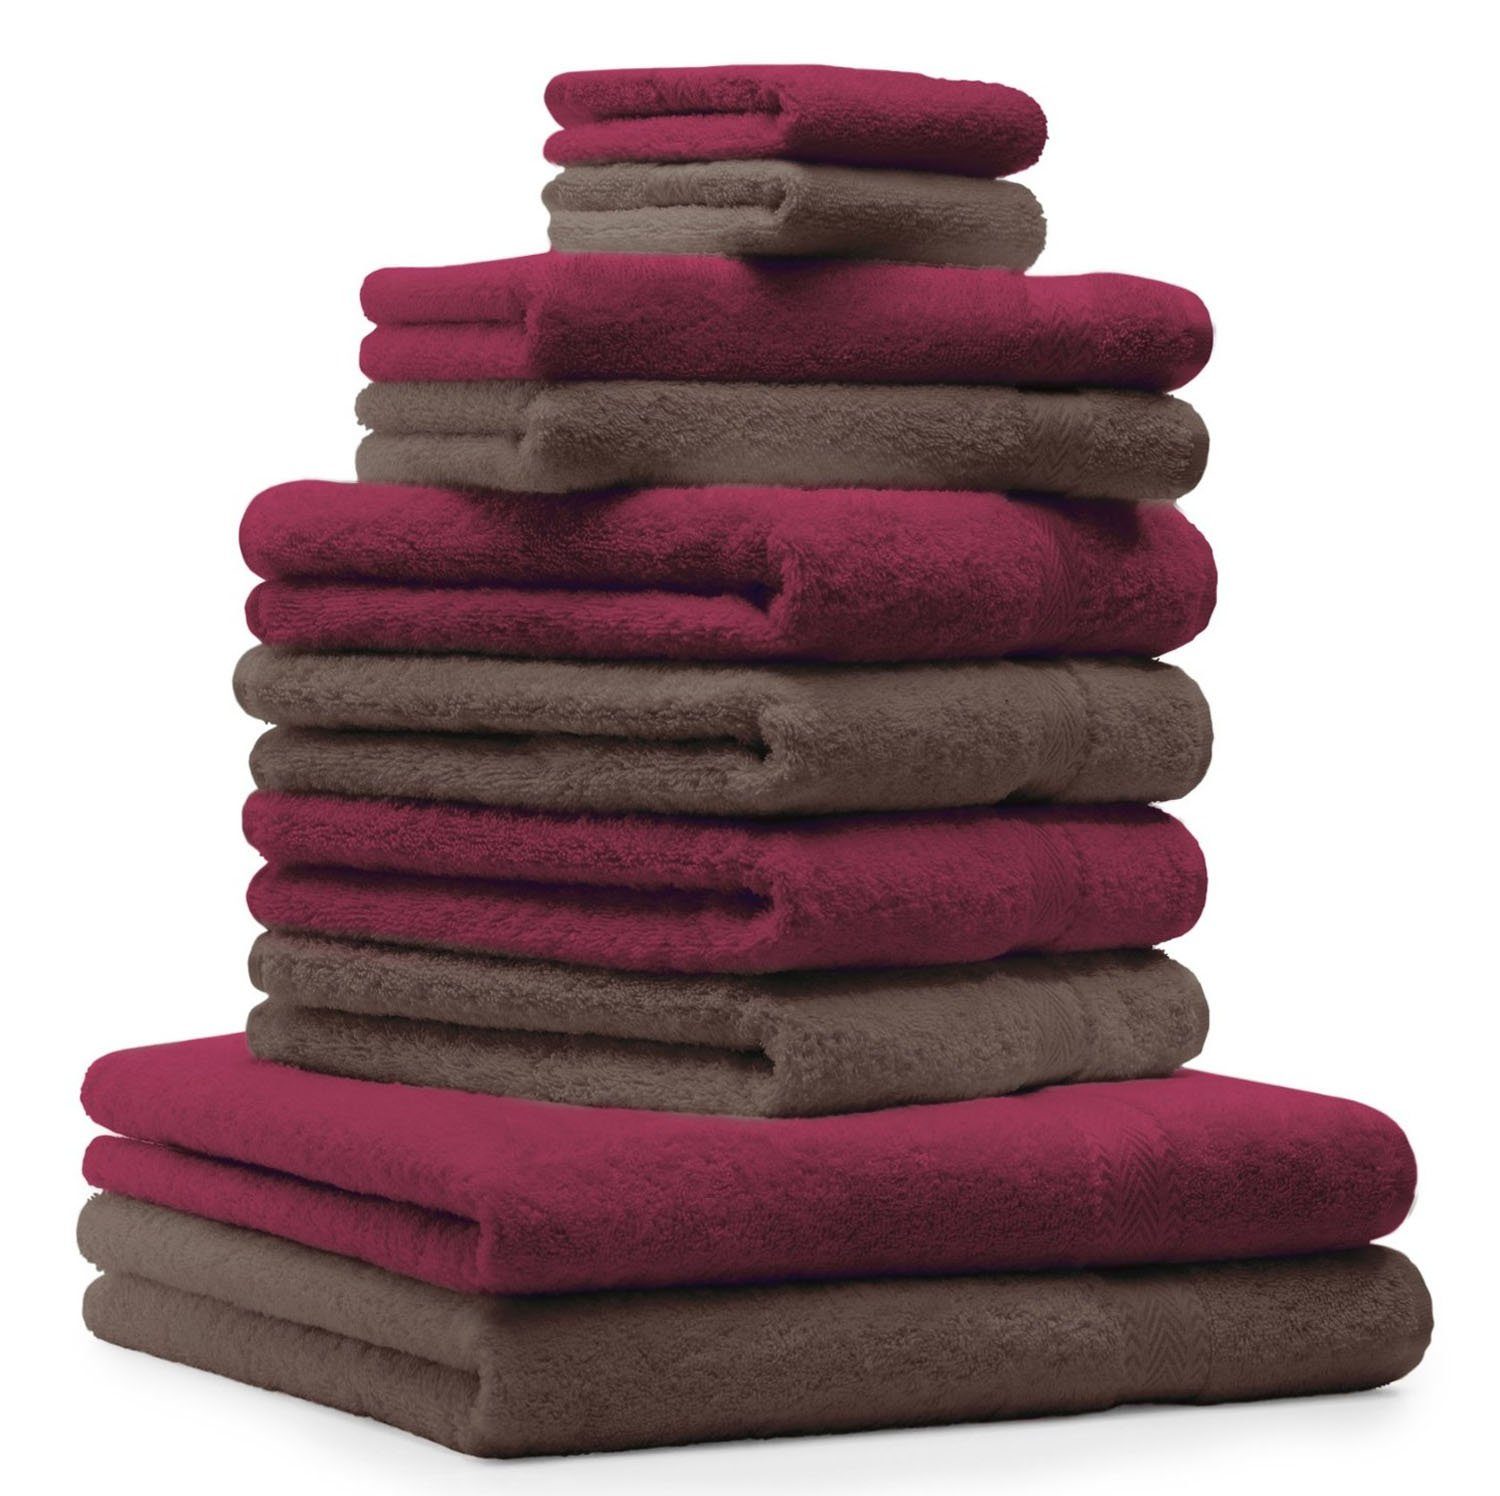 Betz Handtuch Set 10-TLG. Handtuch-Set Premium Farbe Nussbraun & Dunkelrot, 100% Baumwolle, (10-tlg)